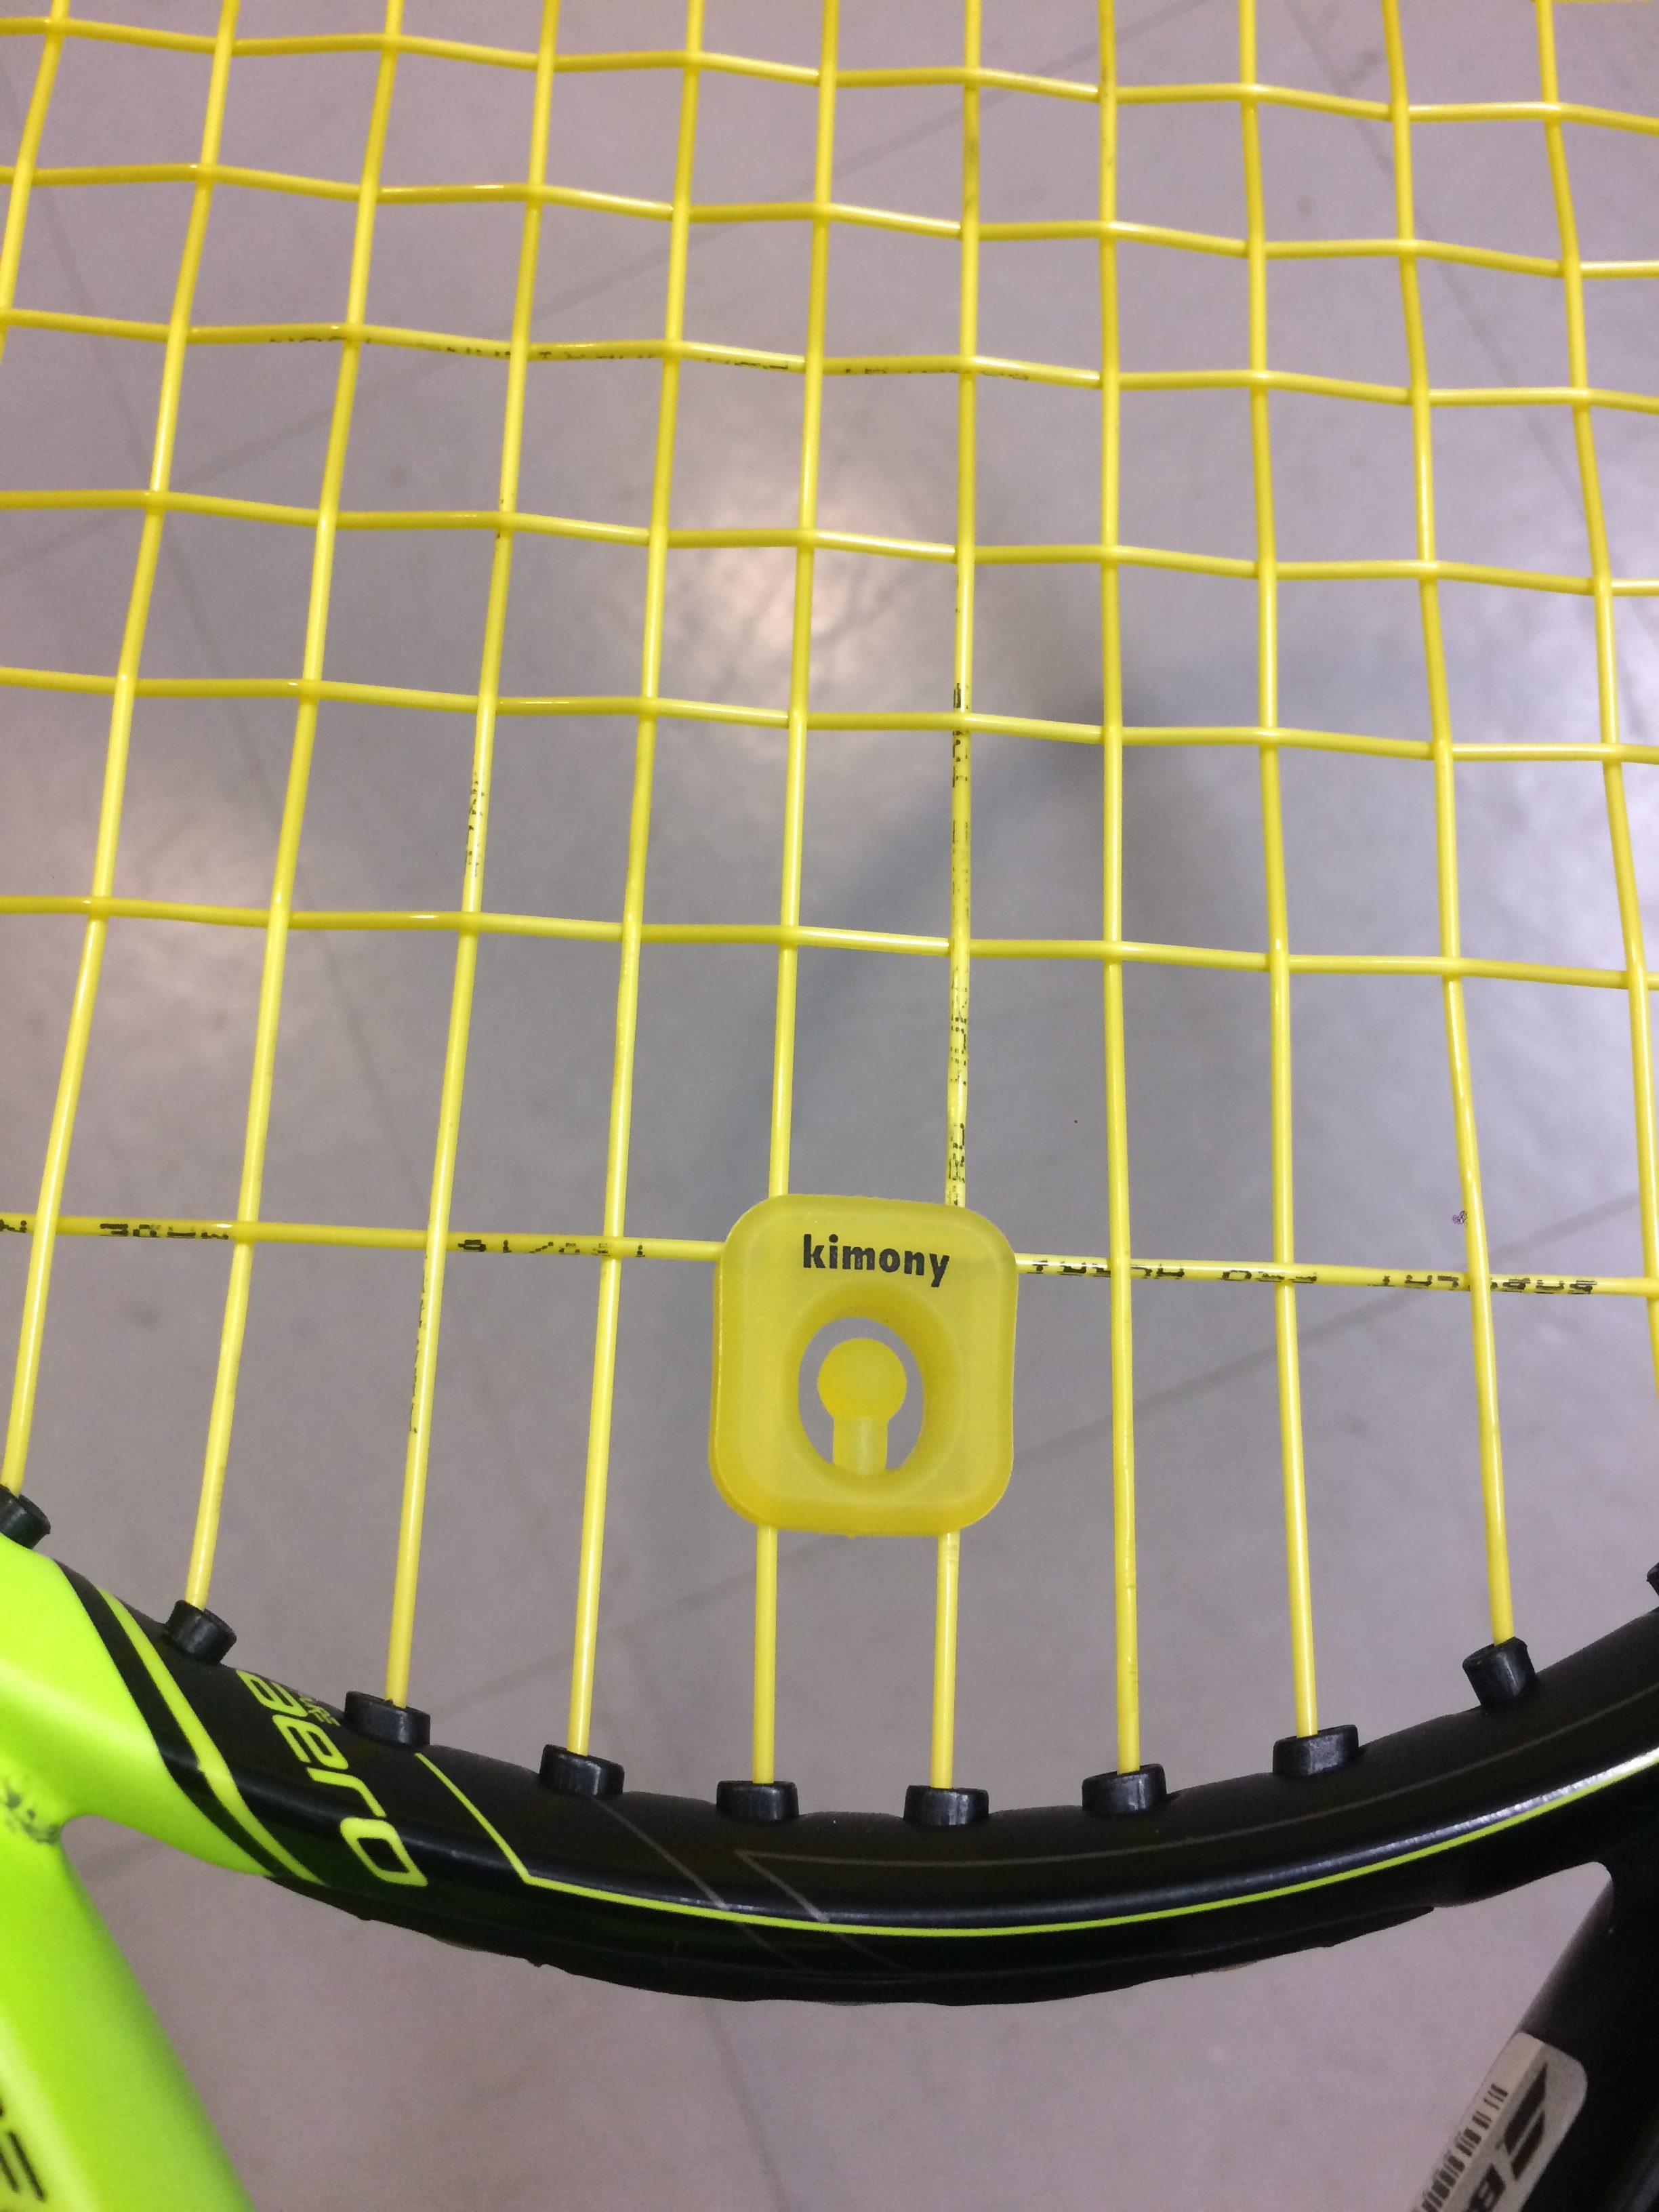 キモニー クエークバスターの盲点 | おすすめテニスラケット講座